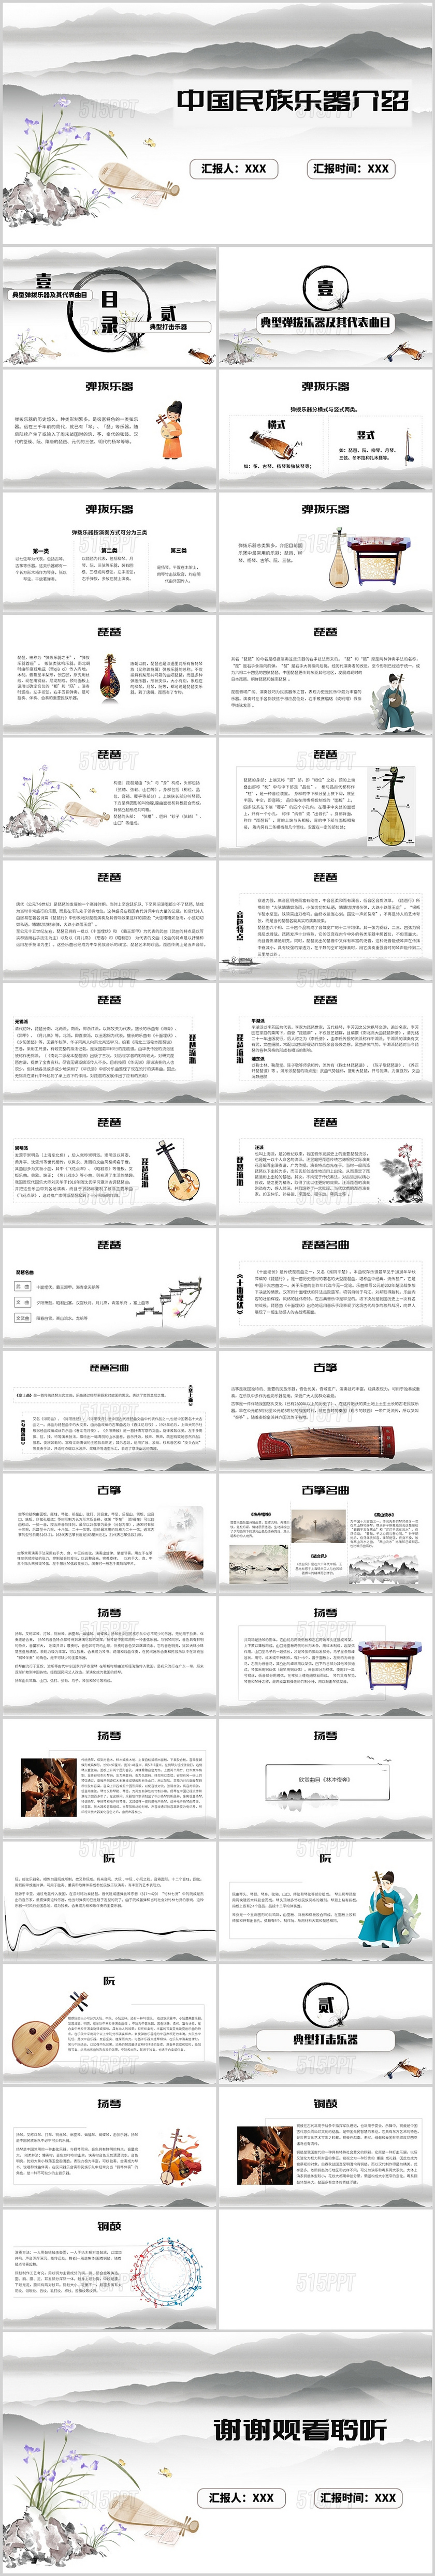 民族风中国民族乐器介绍PPT中国名字乐器介绍下册